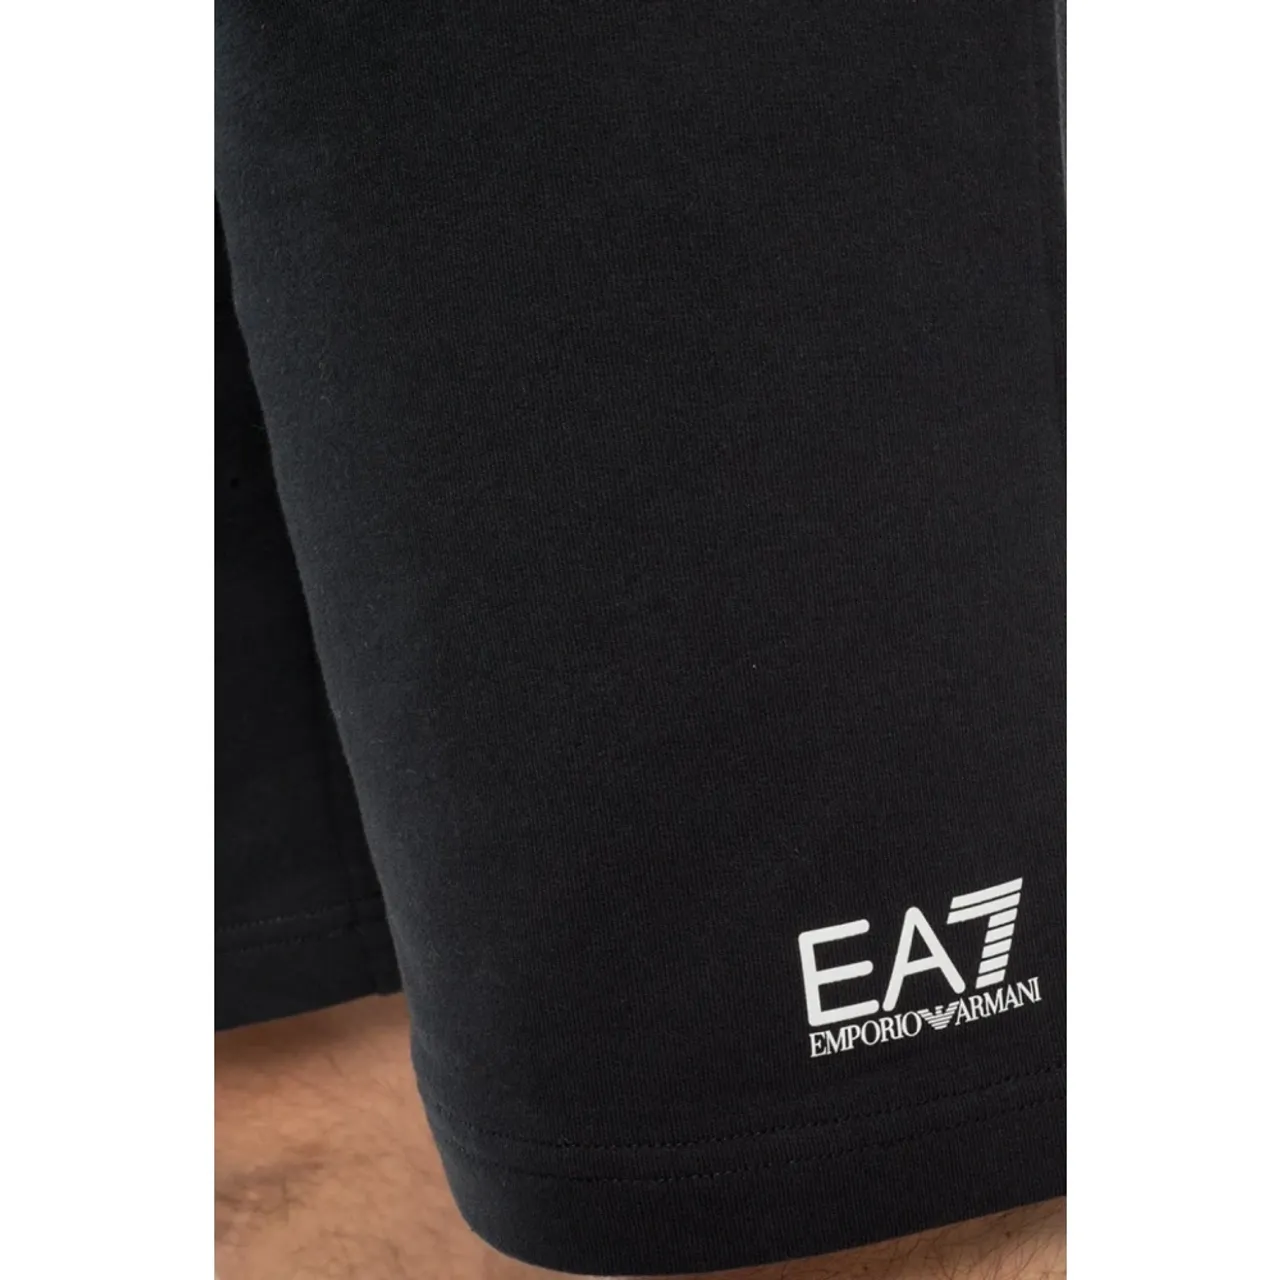 Lässige Shorts Emporio Armani EA7